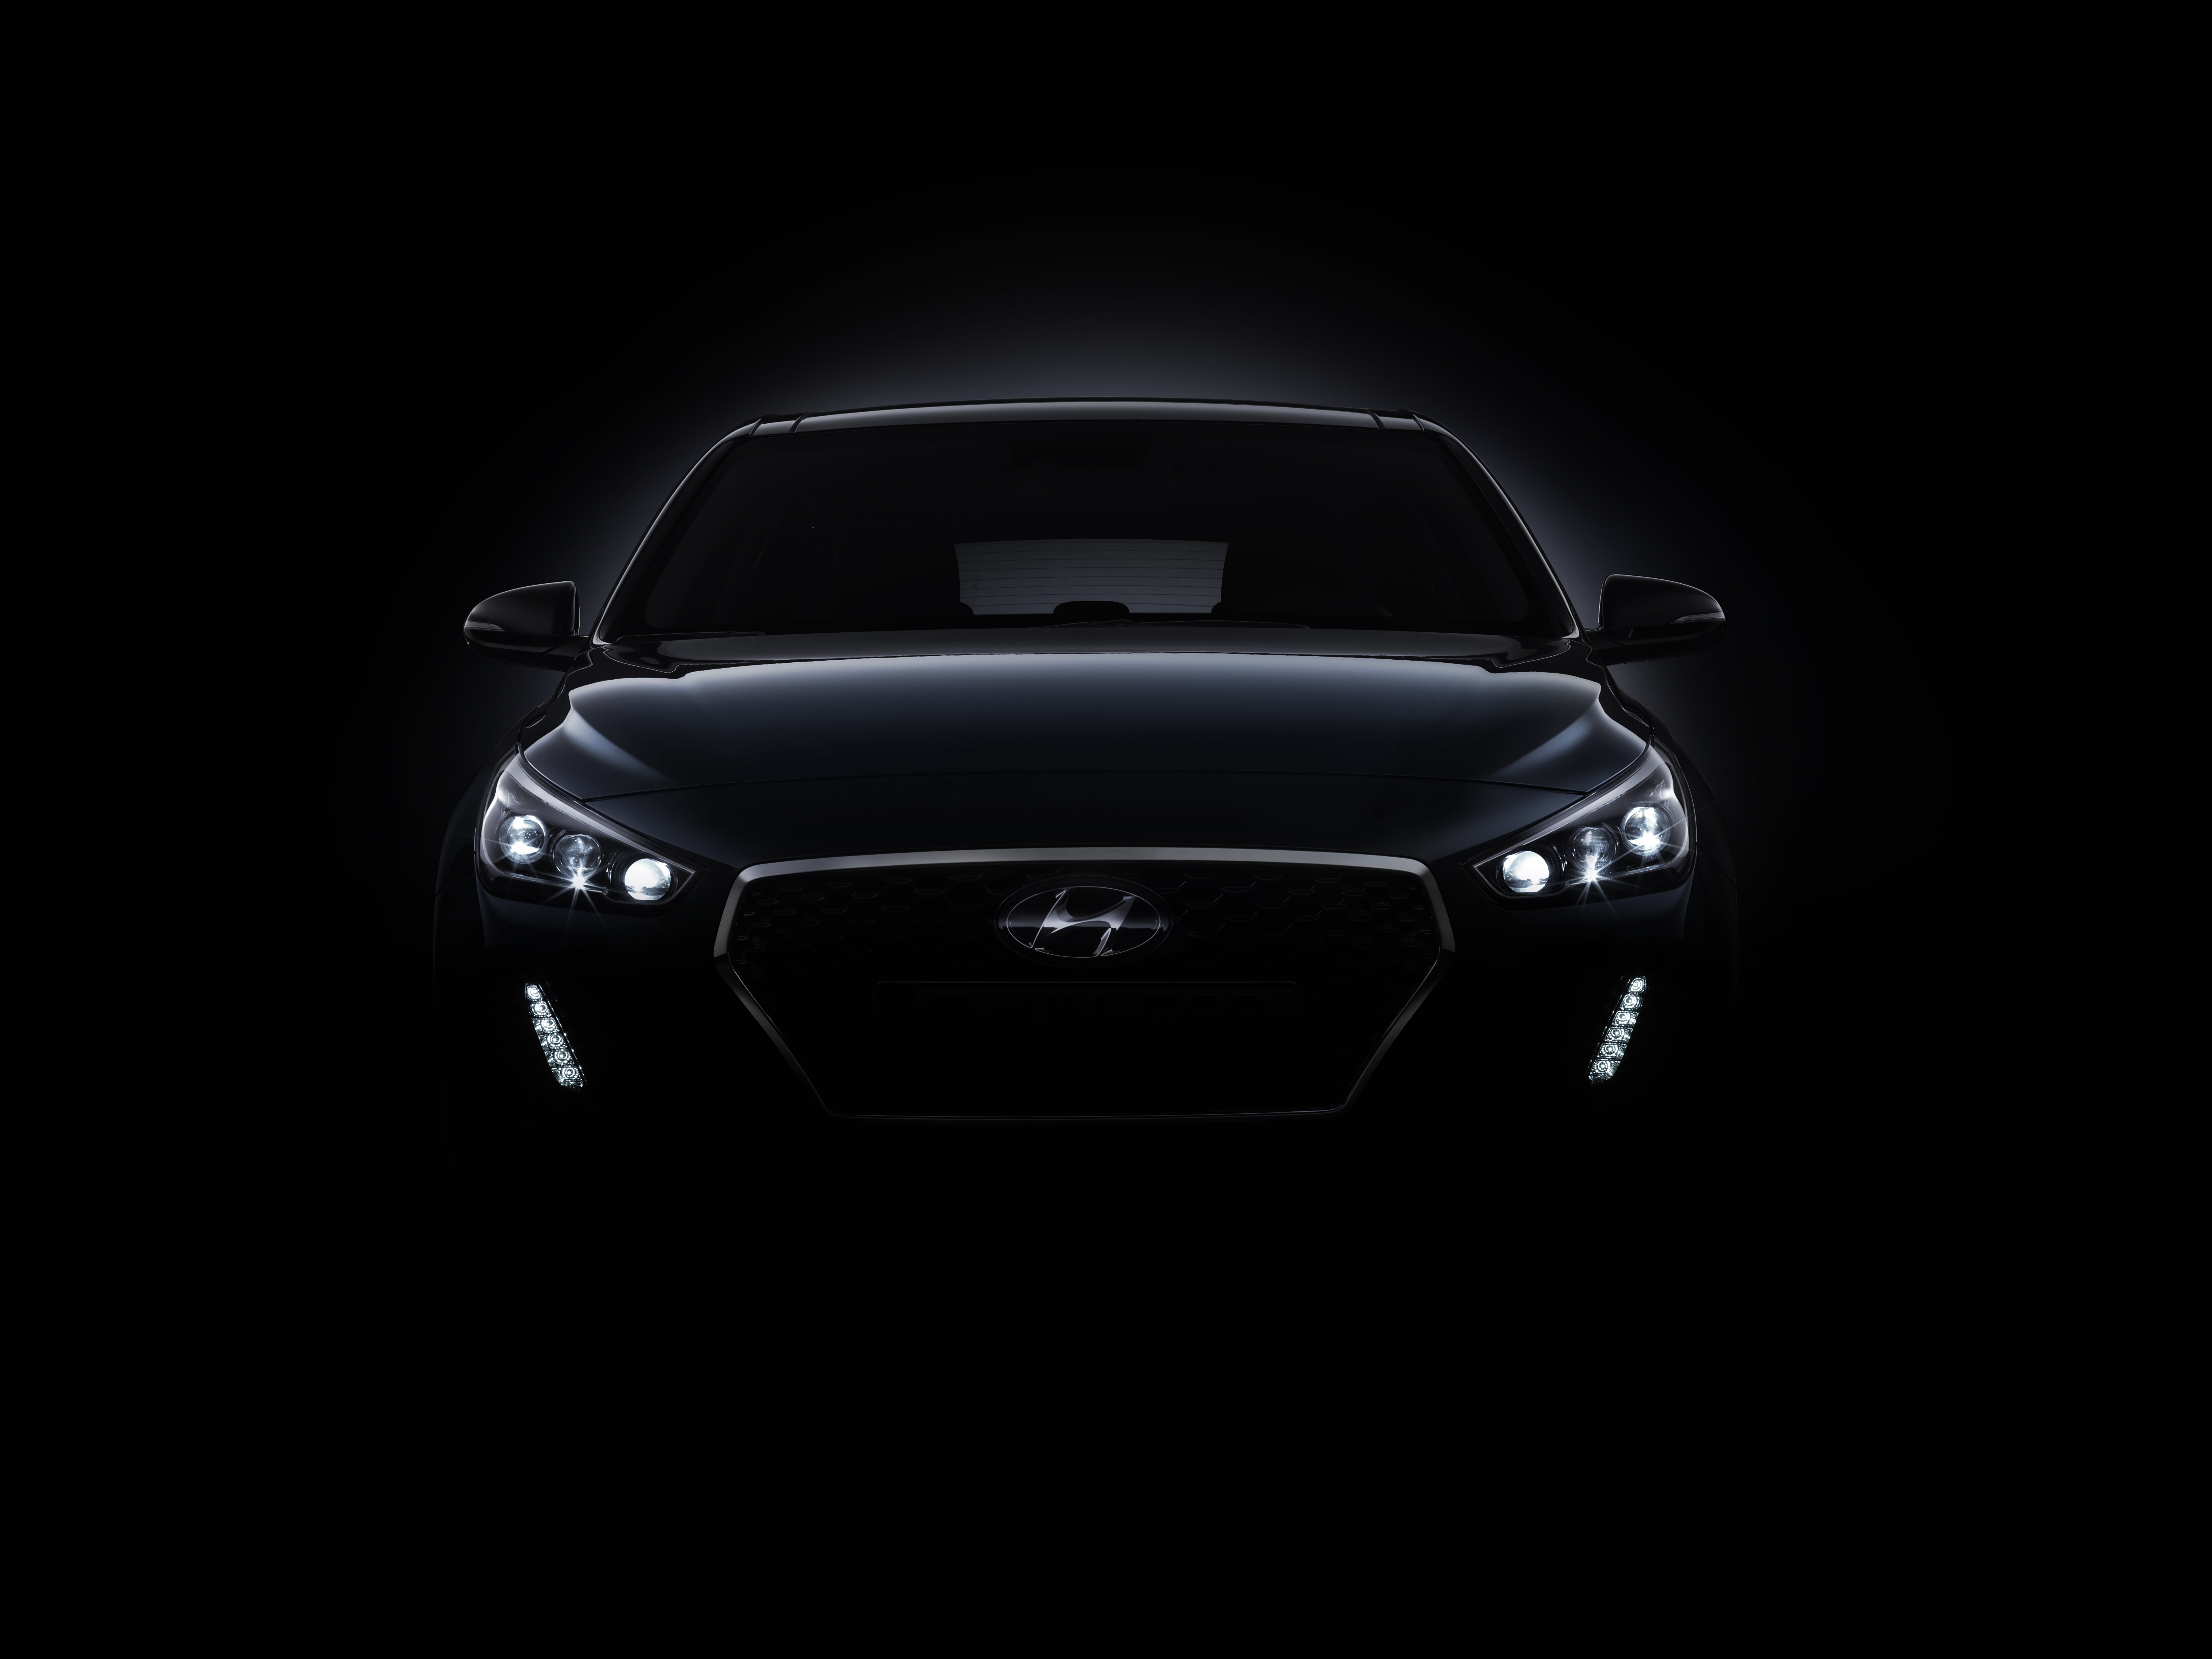 Nowy Hyundai i30 – pierwsze szczegóły